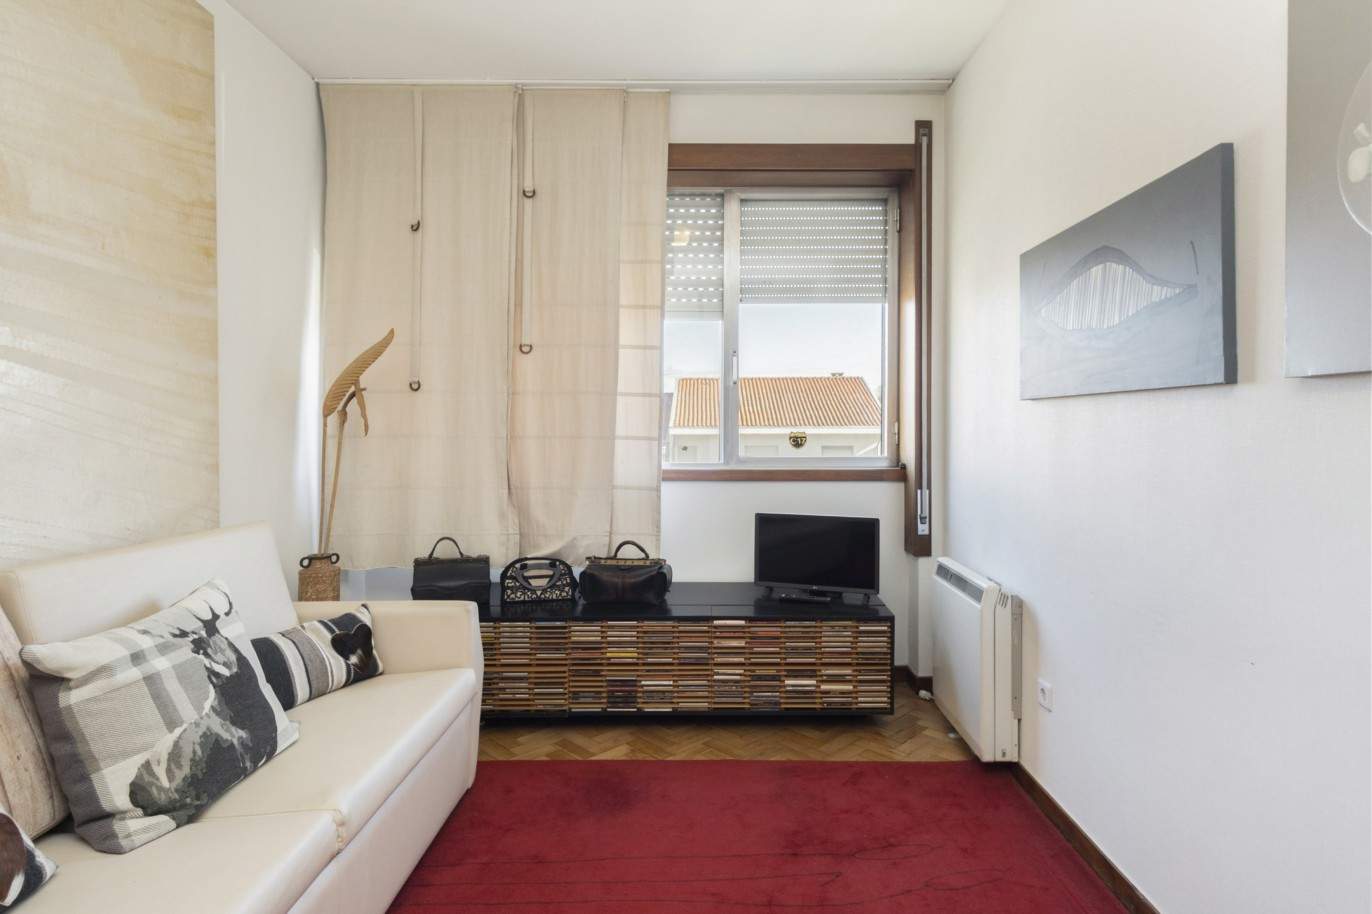 3-Zimmer-Wohnung, zu verkaufen, in der Nähe der Universität Pole, Porto, Portugal_212448